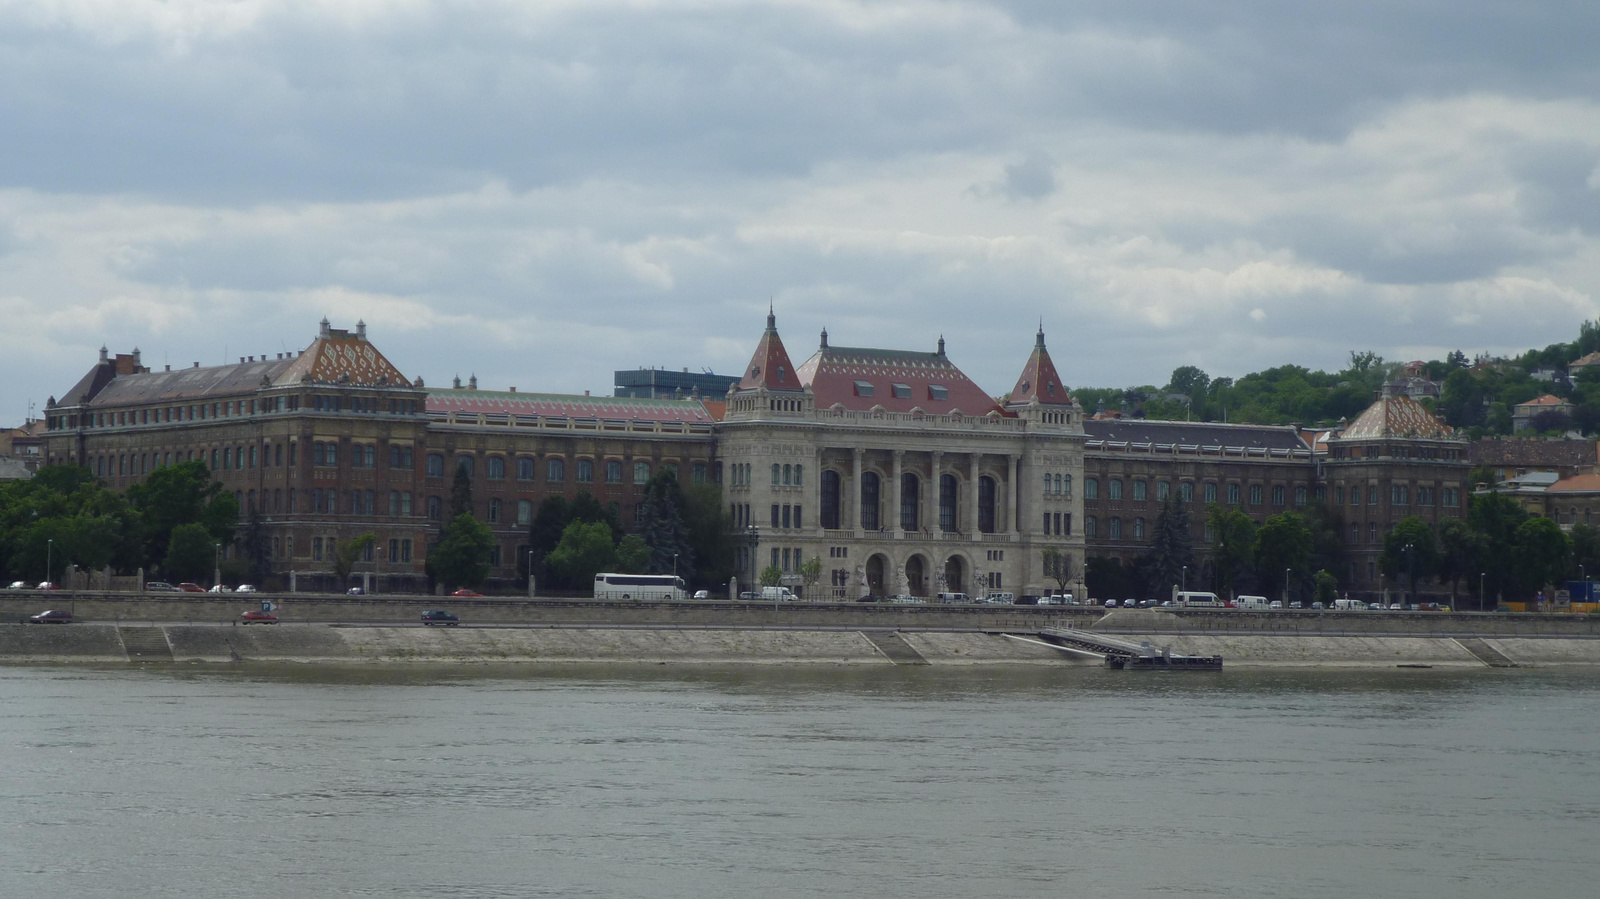 Budapesti Műszaki Egyetem